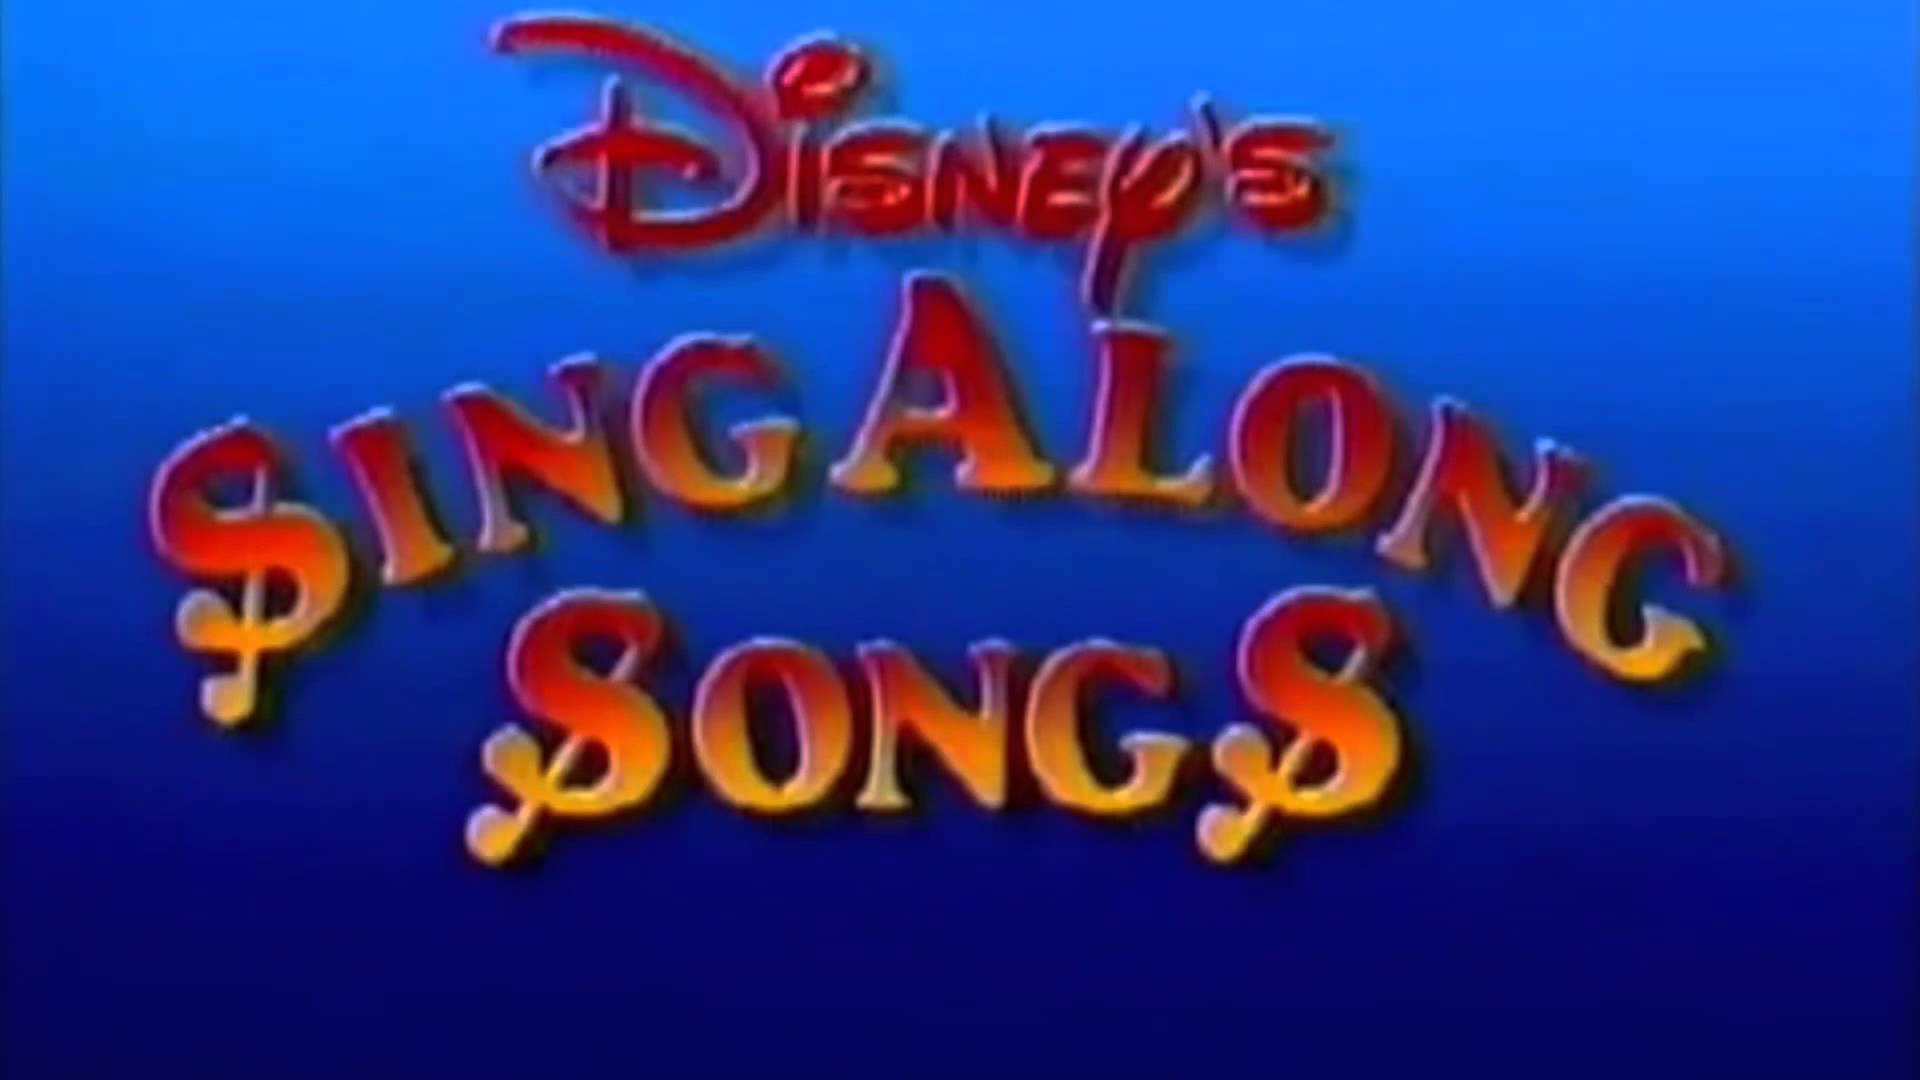 Disney sing along songs Logos